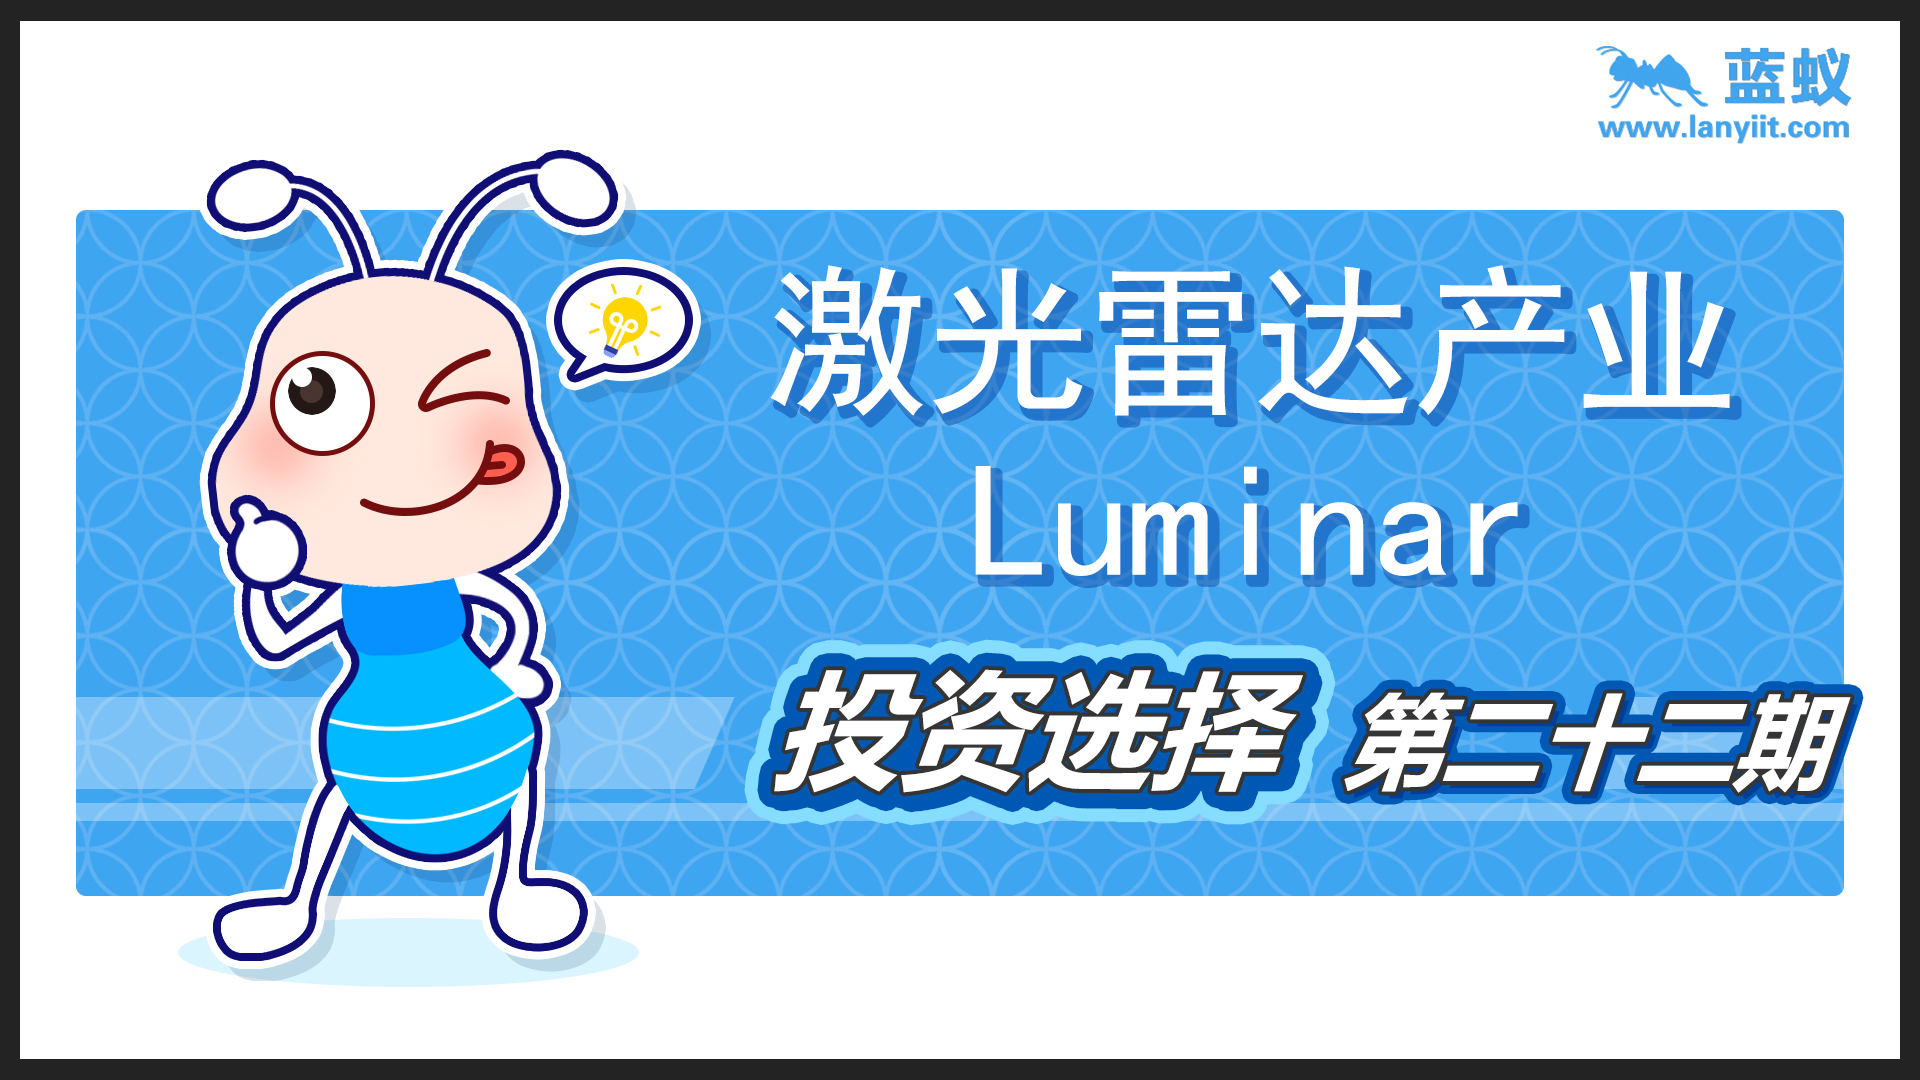 激光雷达产业-Luminar